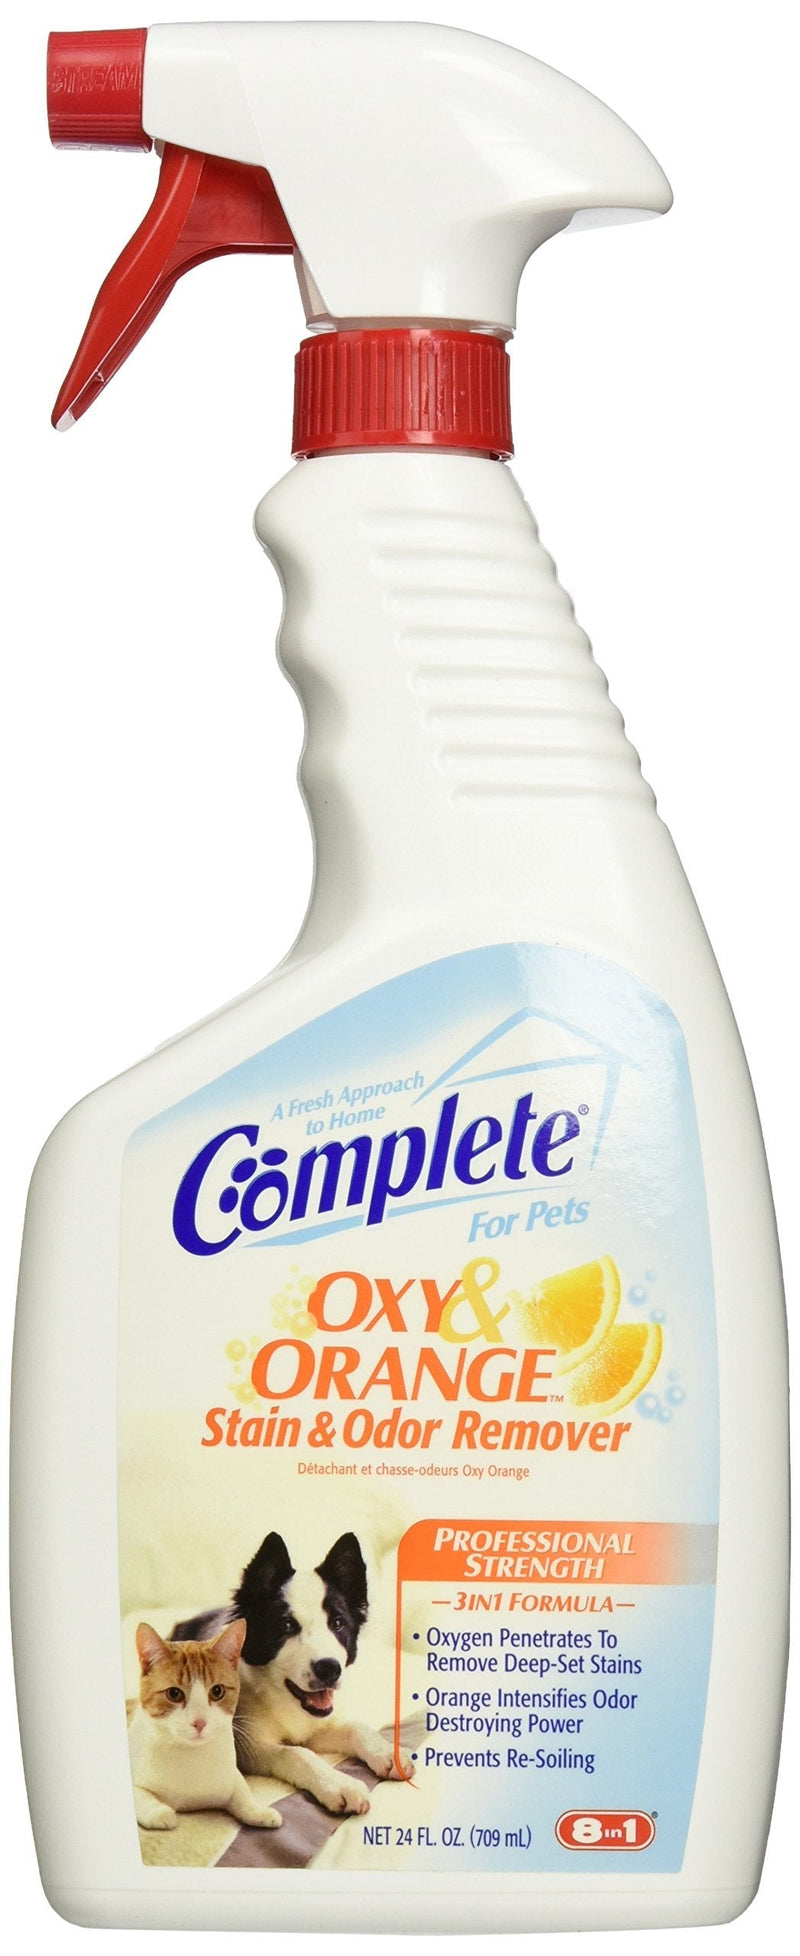 [Australia] - 8 in 1 P-83081 Complete Oxy Stain Remover, Orange 